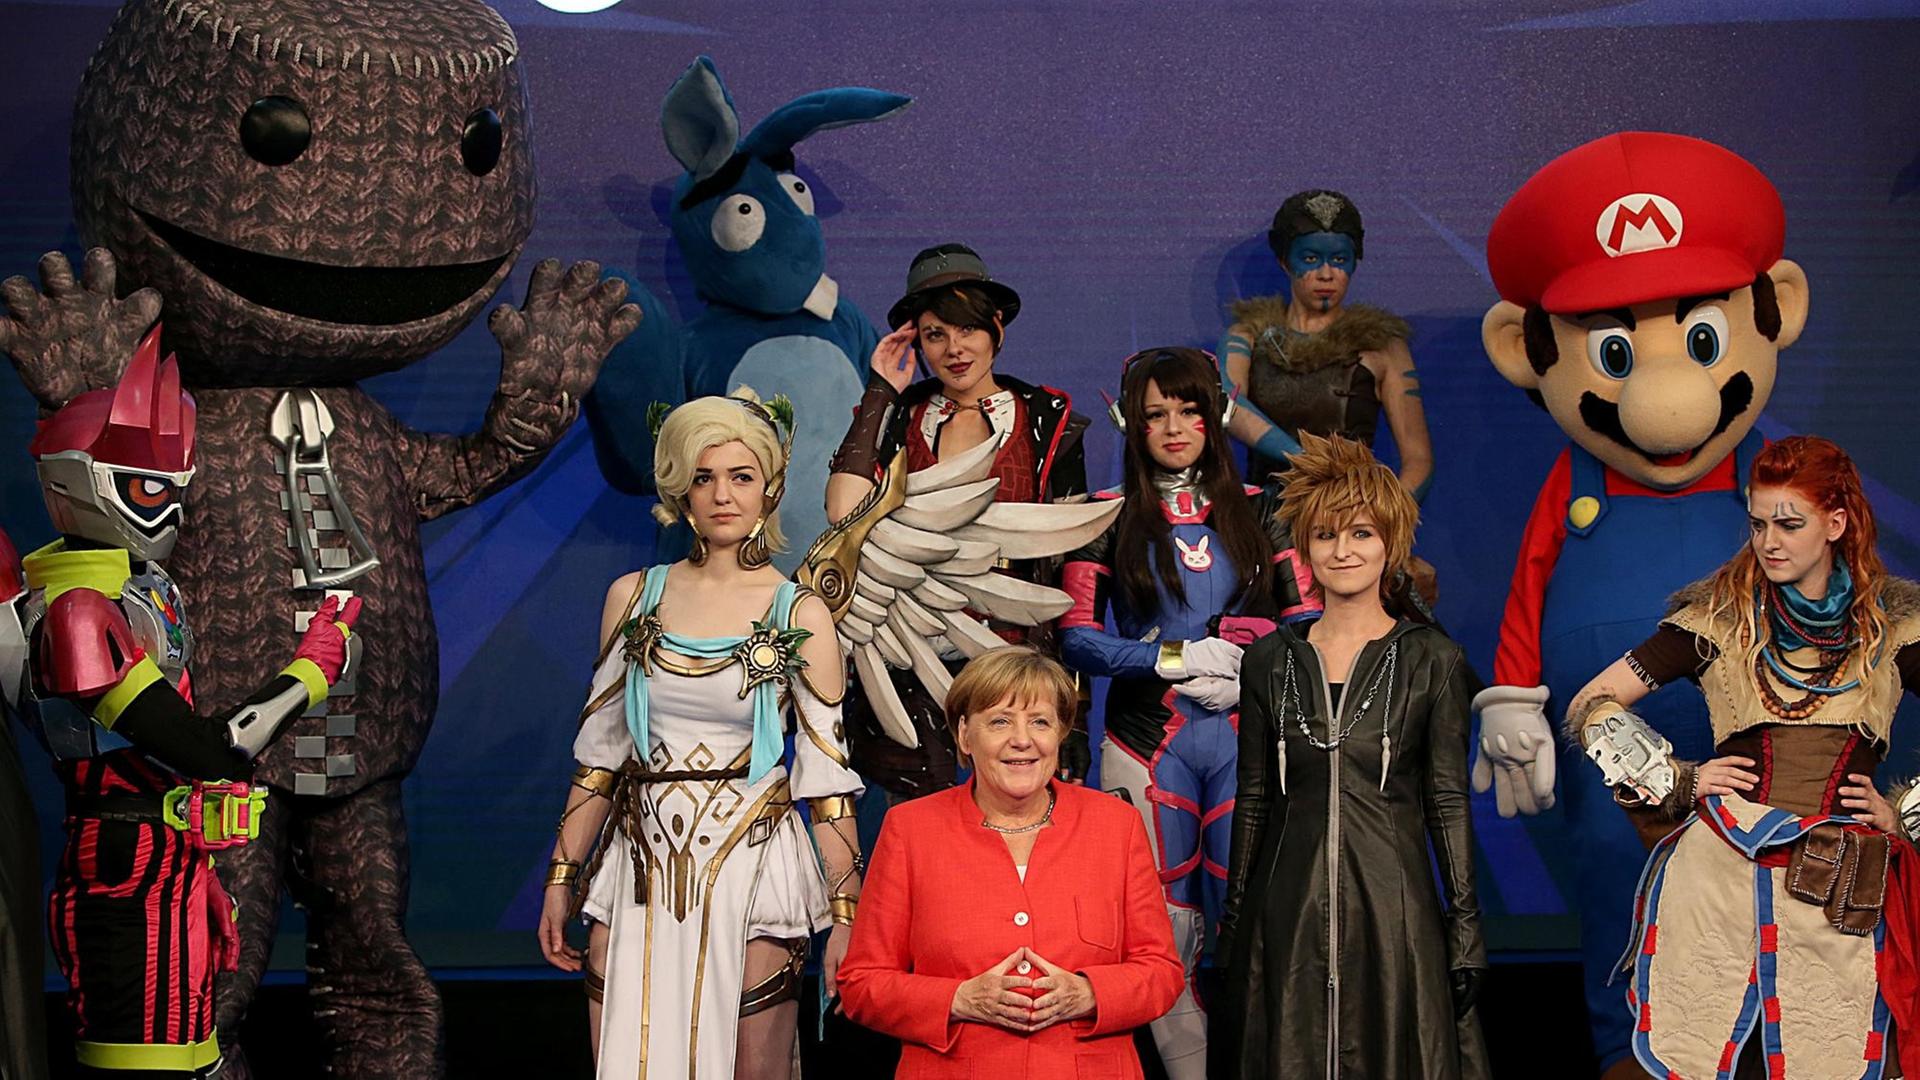 Bundeskanzlerin Angela Merkel (M, CDU) steht am 22.08.2017 in Köln (Nordrhein-Westfalen) unter Cosplayern.